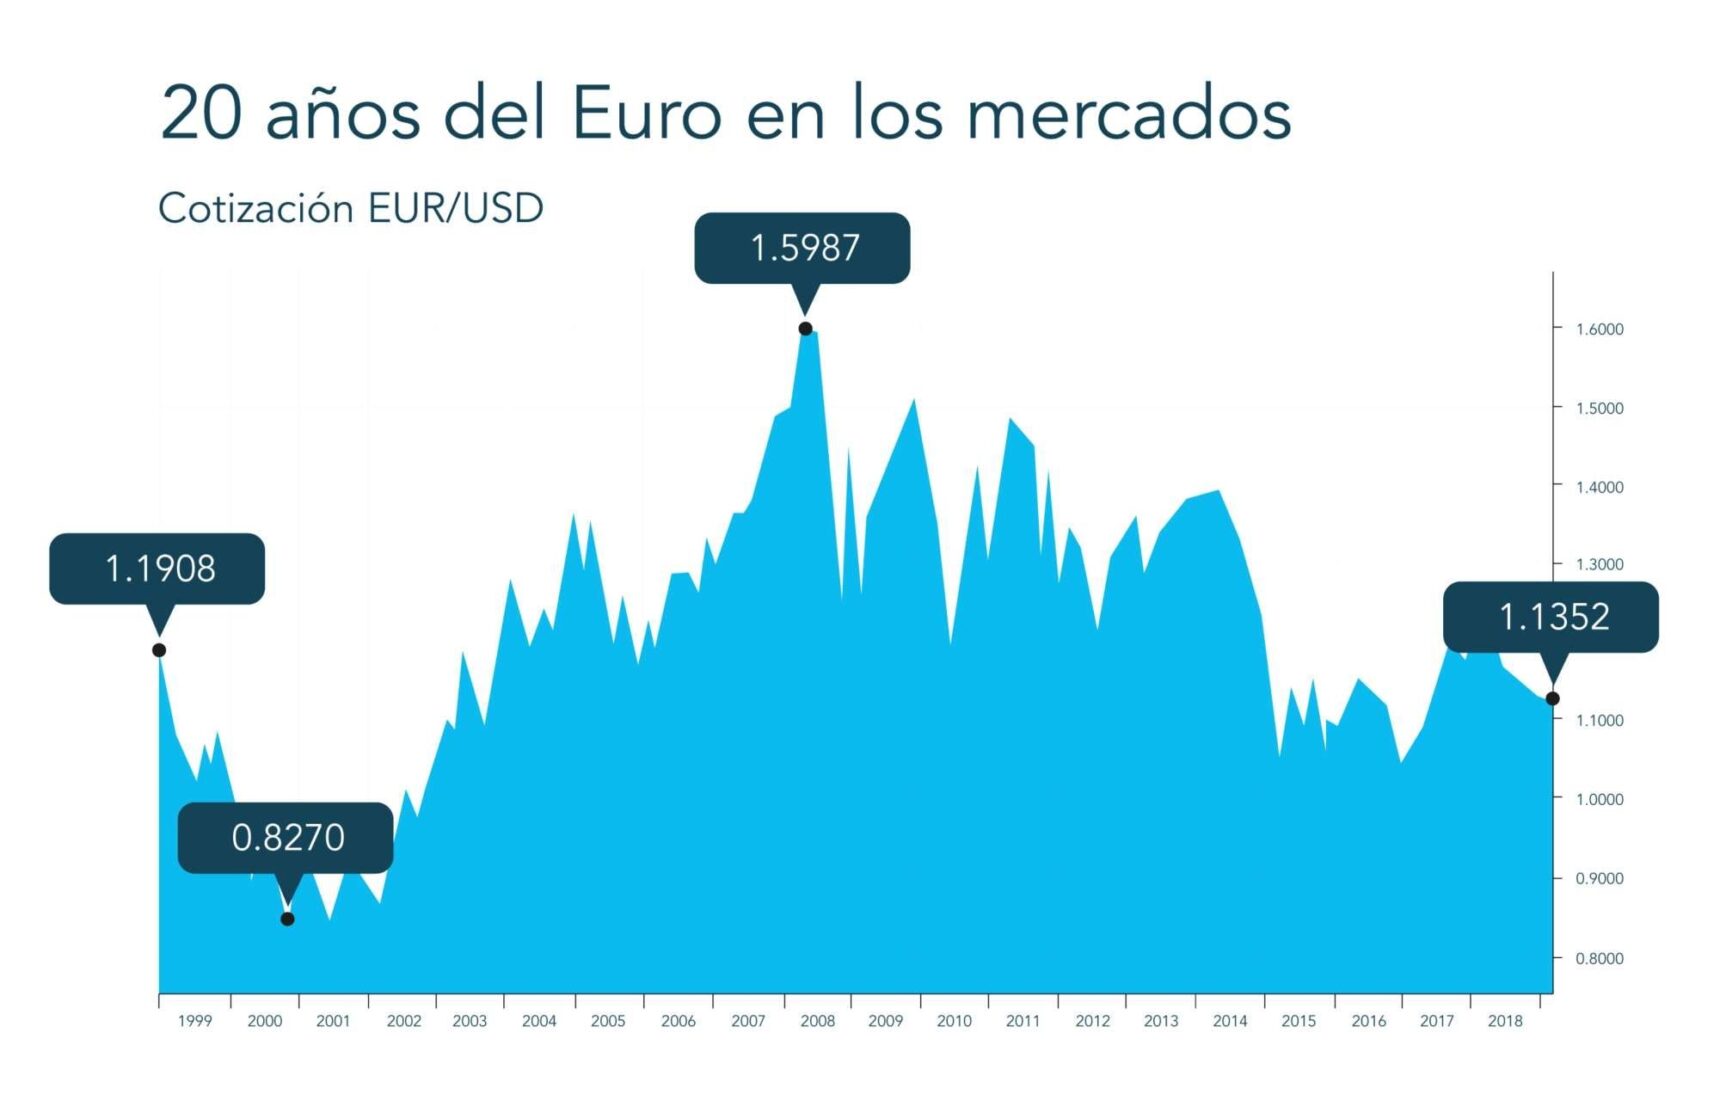 Mercados21 | Luces y sombras de 20 años del euro en los mercados